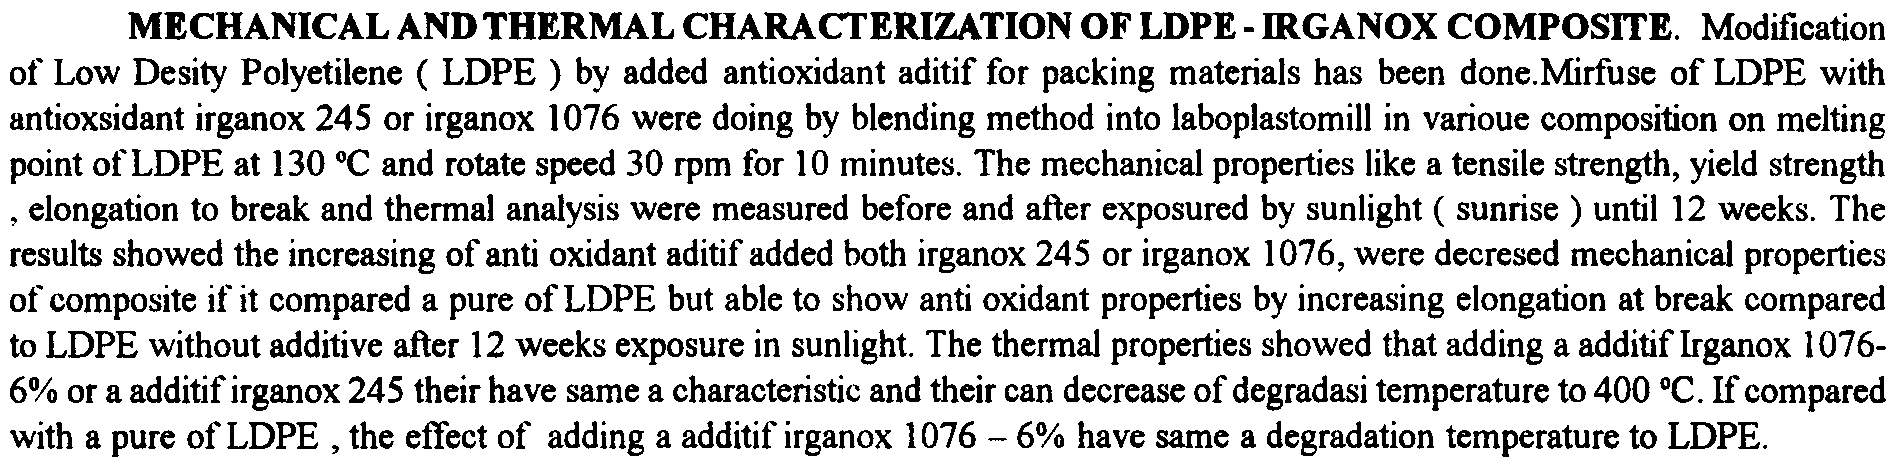 Hasil yang diperoleh menunjukkan bahwa semakin banyak penambahan aditif irganok 245 maupun irganok 1076 dapat menurunkan sifat mekanik komposit tersebut jika dibandingkan dengan LDPE mumi, namun